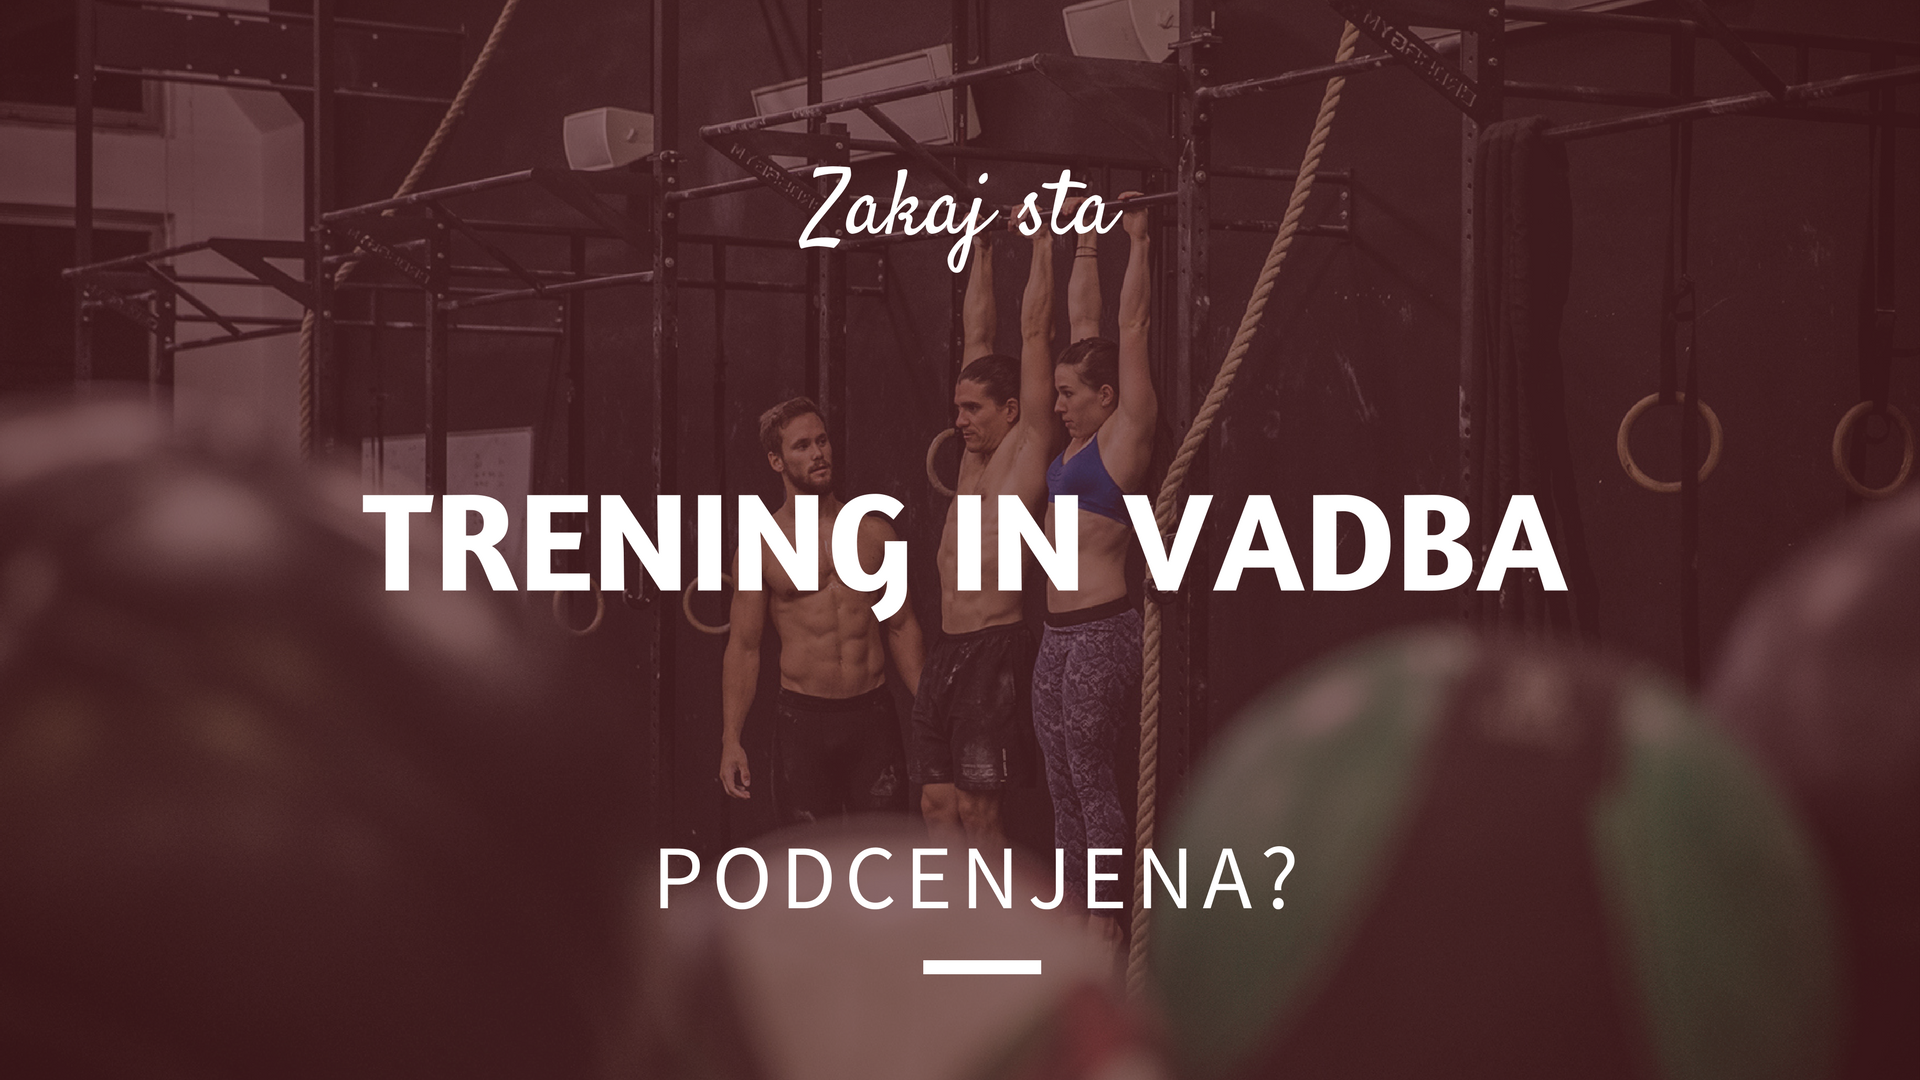 You are currently viewing Zakaj sta trening in vadba podcenjena?